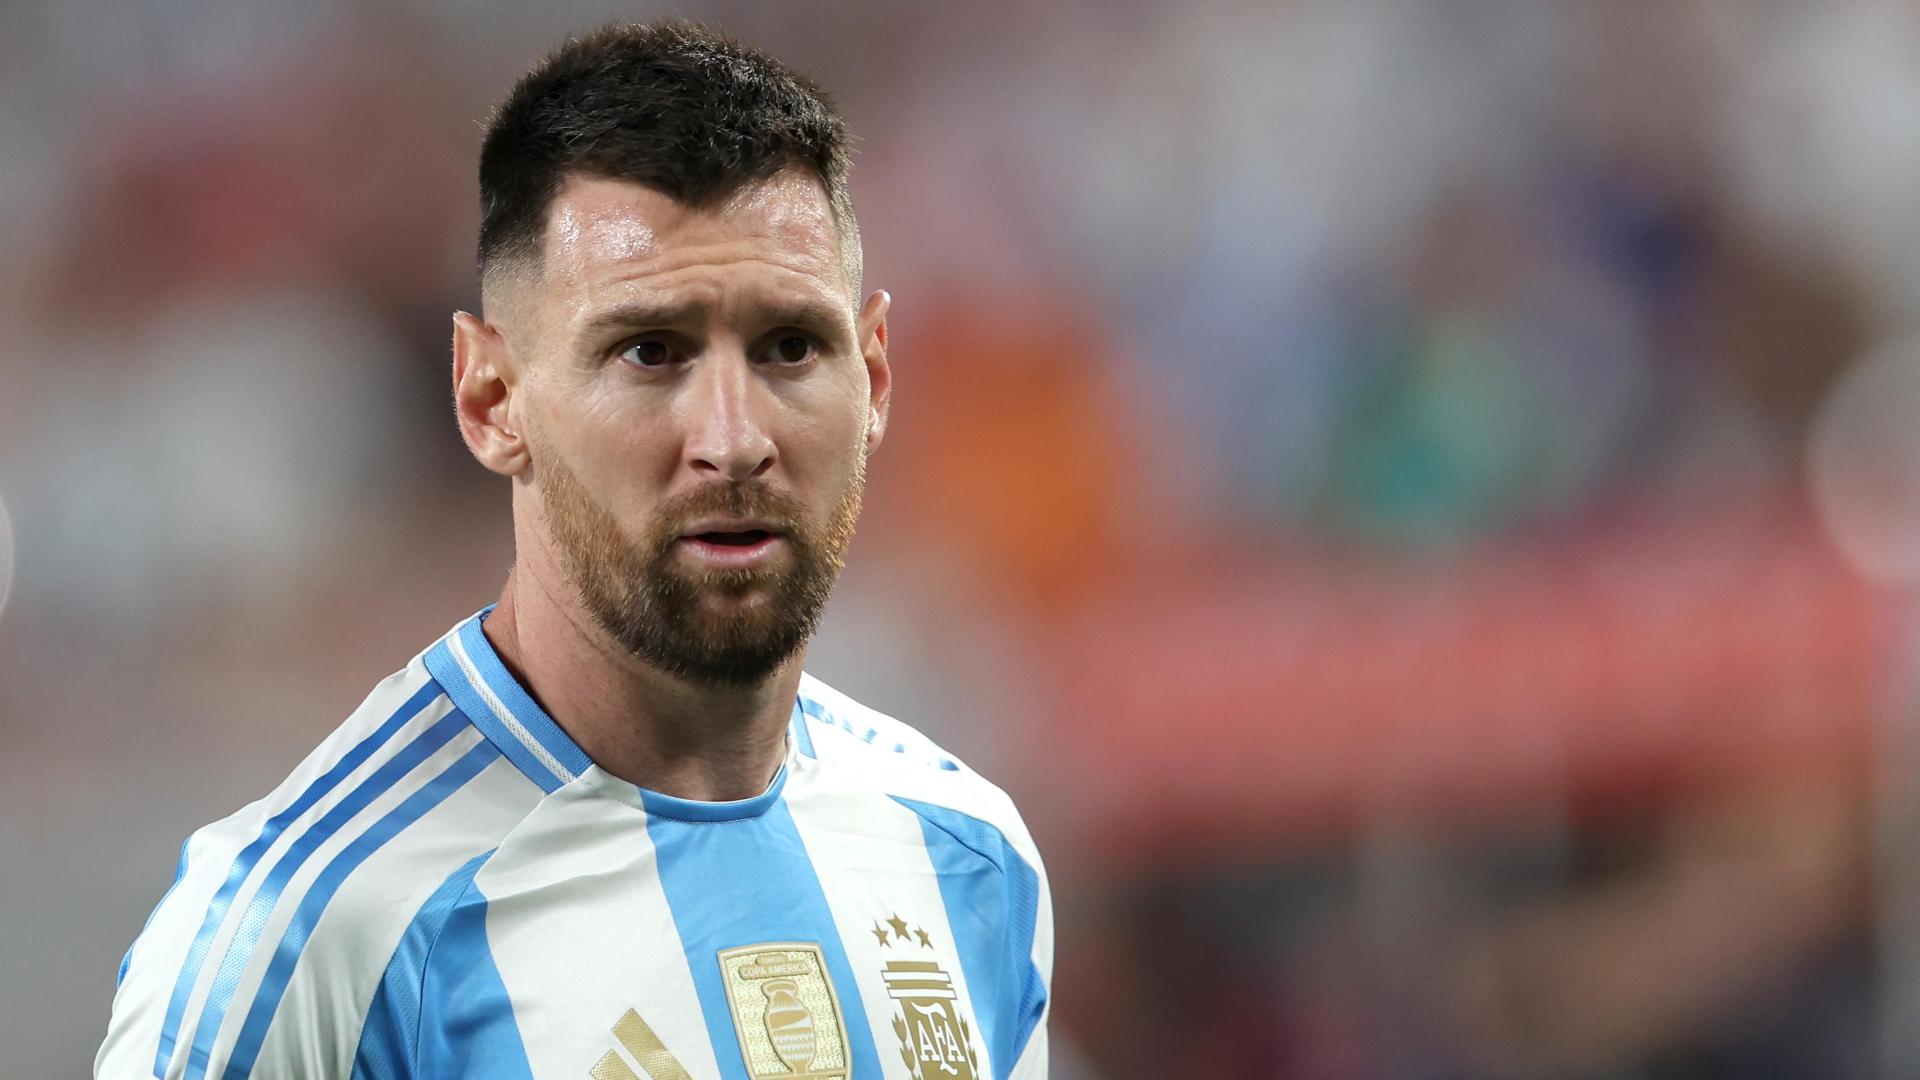 Argentina face Peru sans Messi  Scaloni in final Copa America group clash